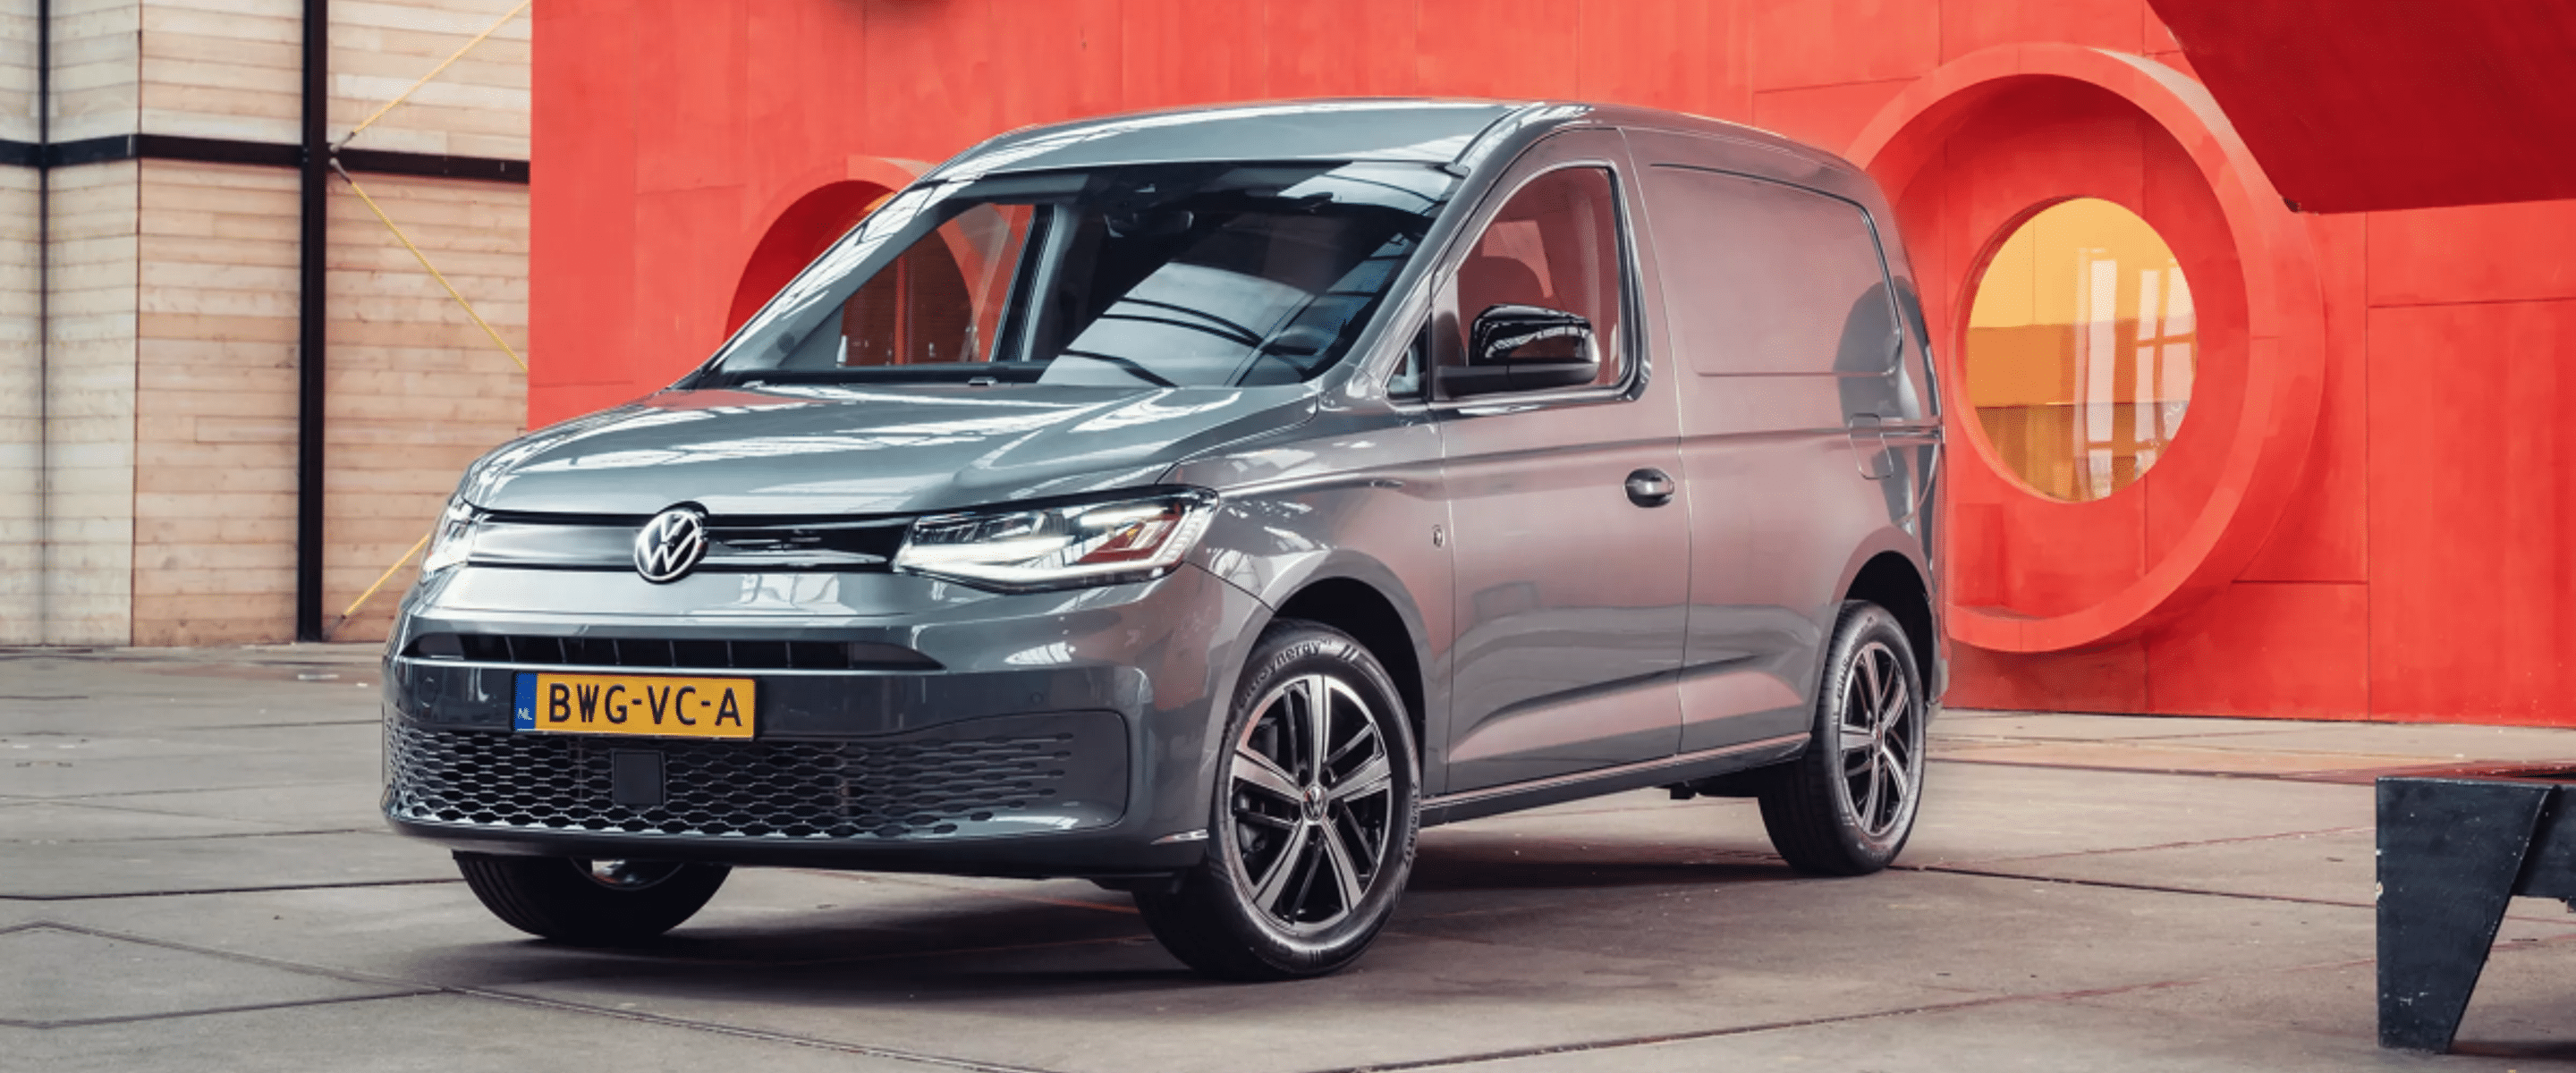 Volkswagen Caddy zakelijk leasen v.a. €425 p/m